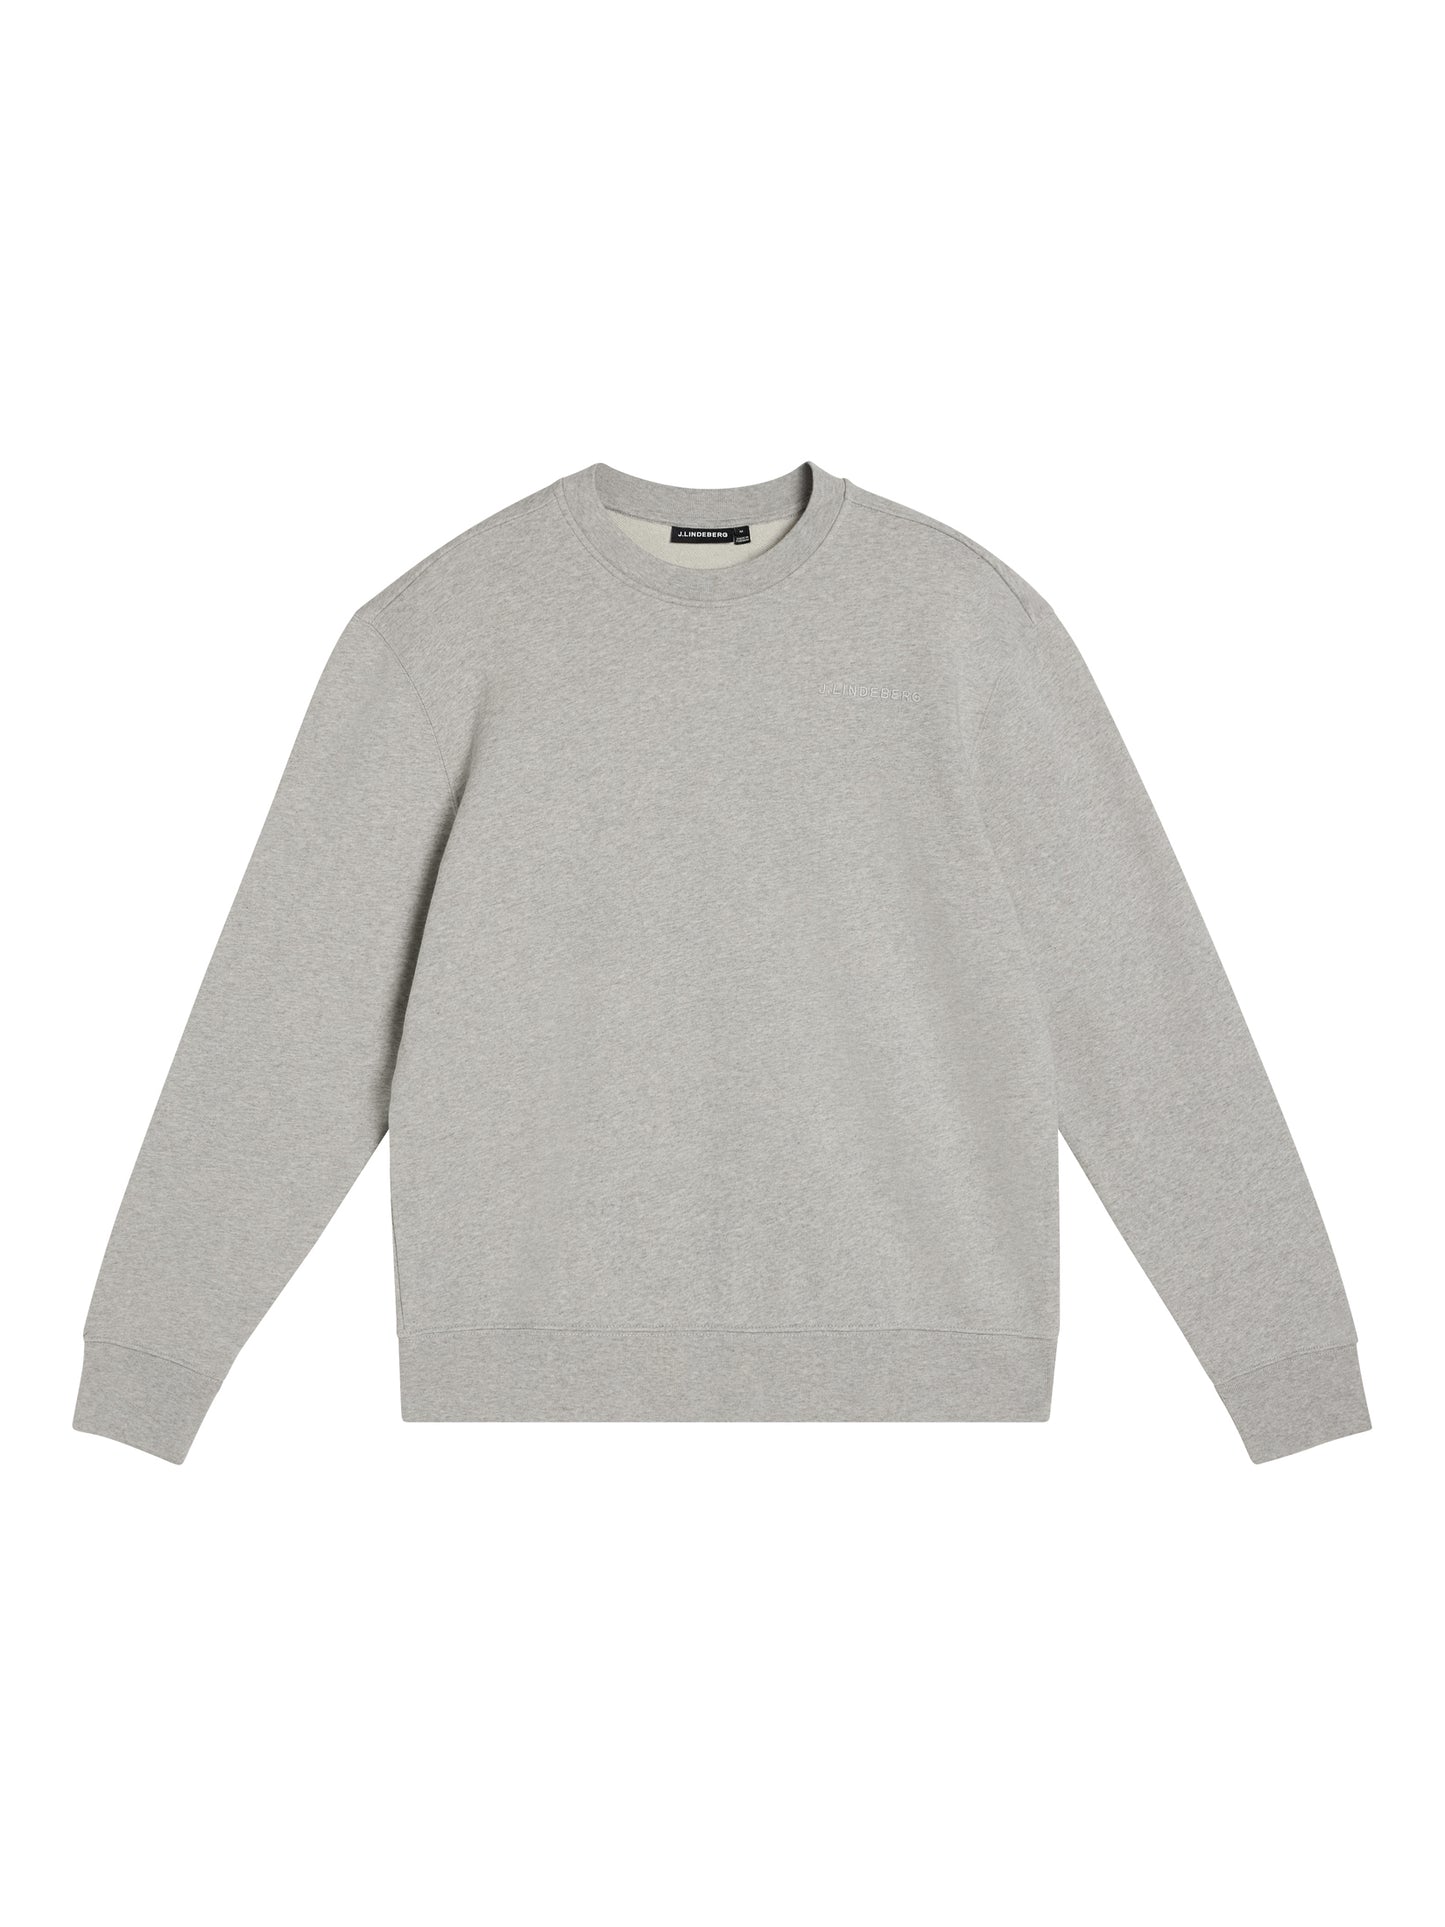 Chip Crew Neck Sweatshirt / Light Grey Melange